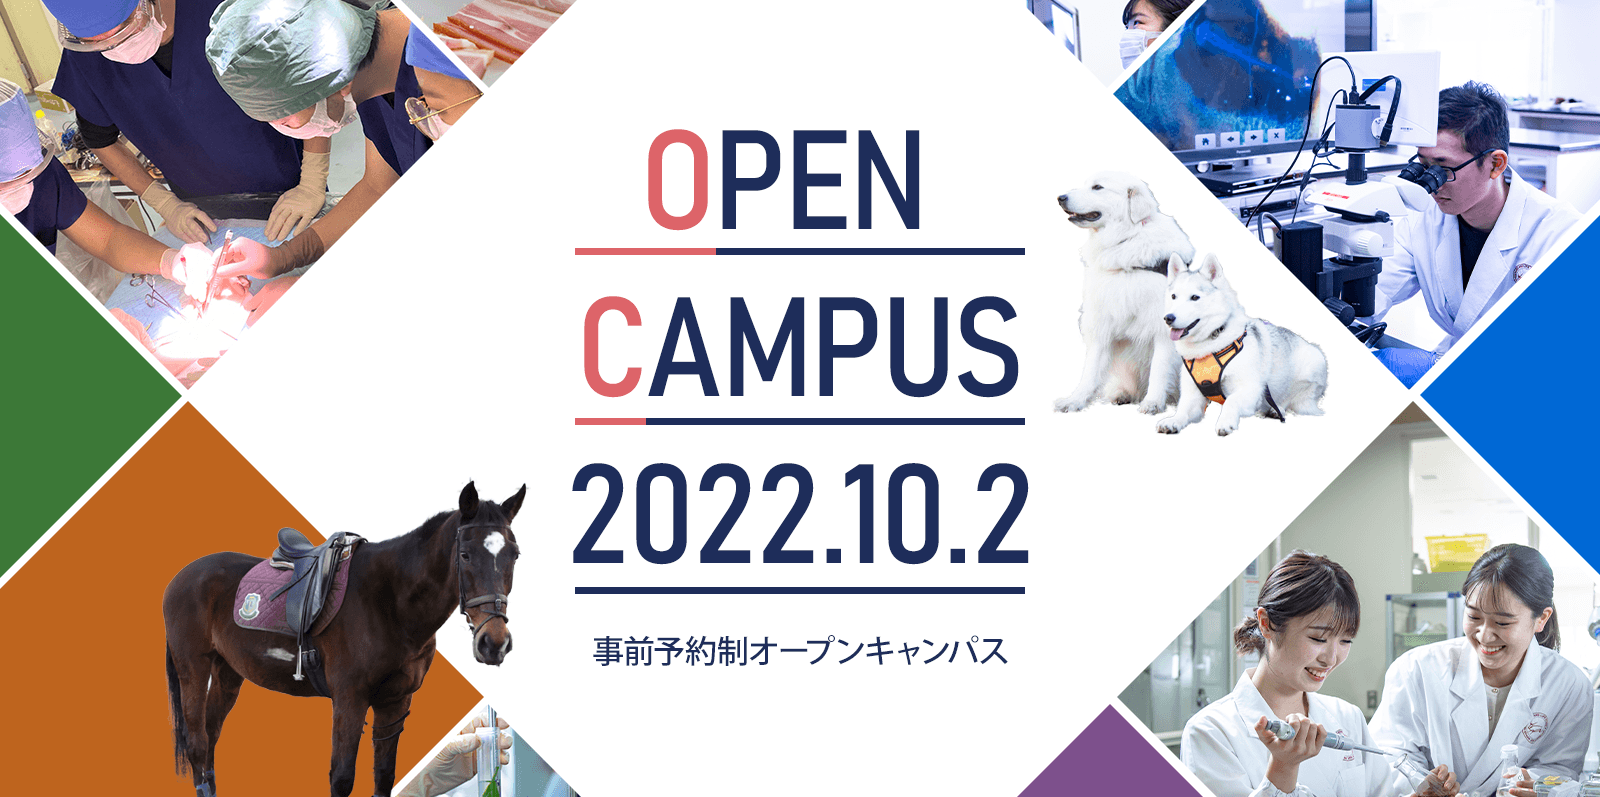 10月2日（日）オープンキャンパスを開催します！　～9月16日（金）午前7時30分から申し込み受付開始～